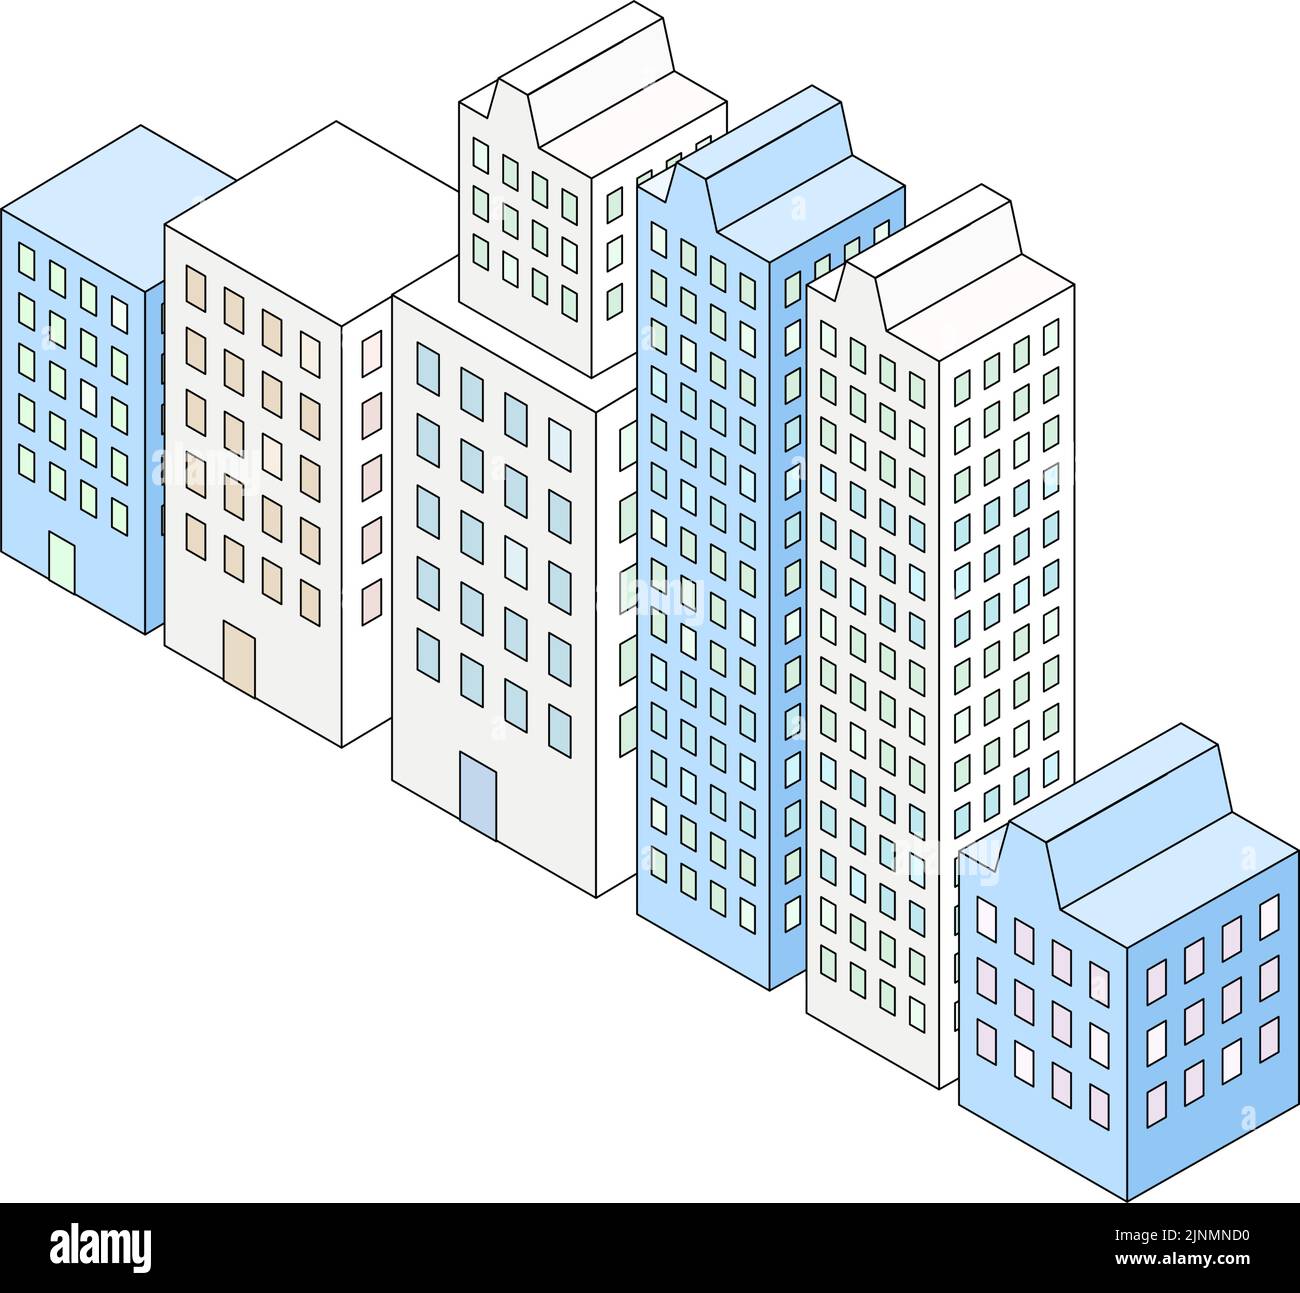 Illustrazione dei grattacieli allineati affiancati, isometrici Illustrazione Vettoriale